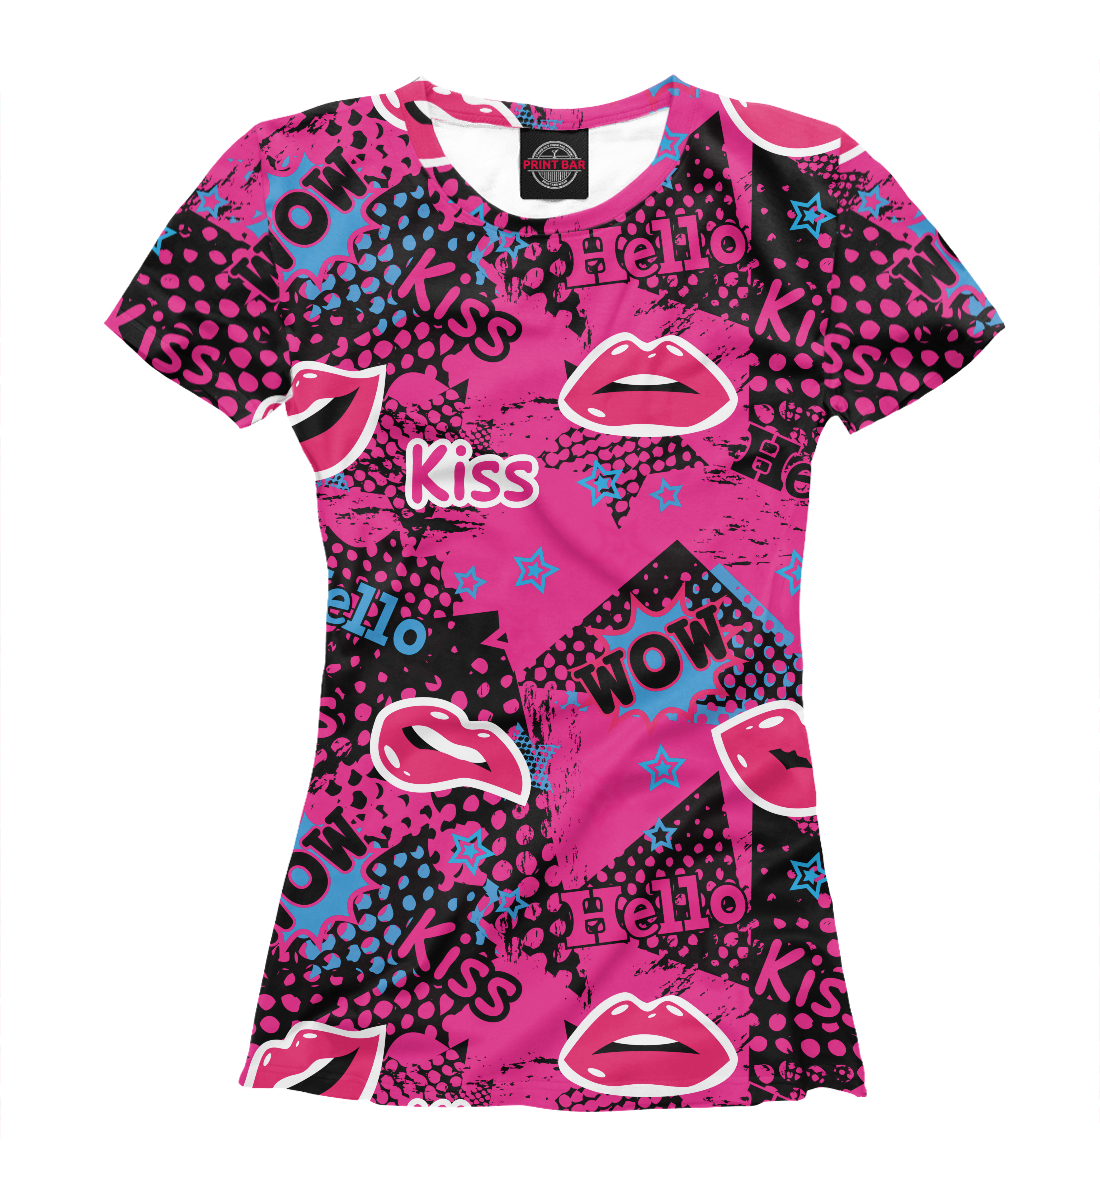 Футболка Kiss для женщин, артикул: 14F-506303-fut-1mp